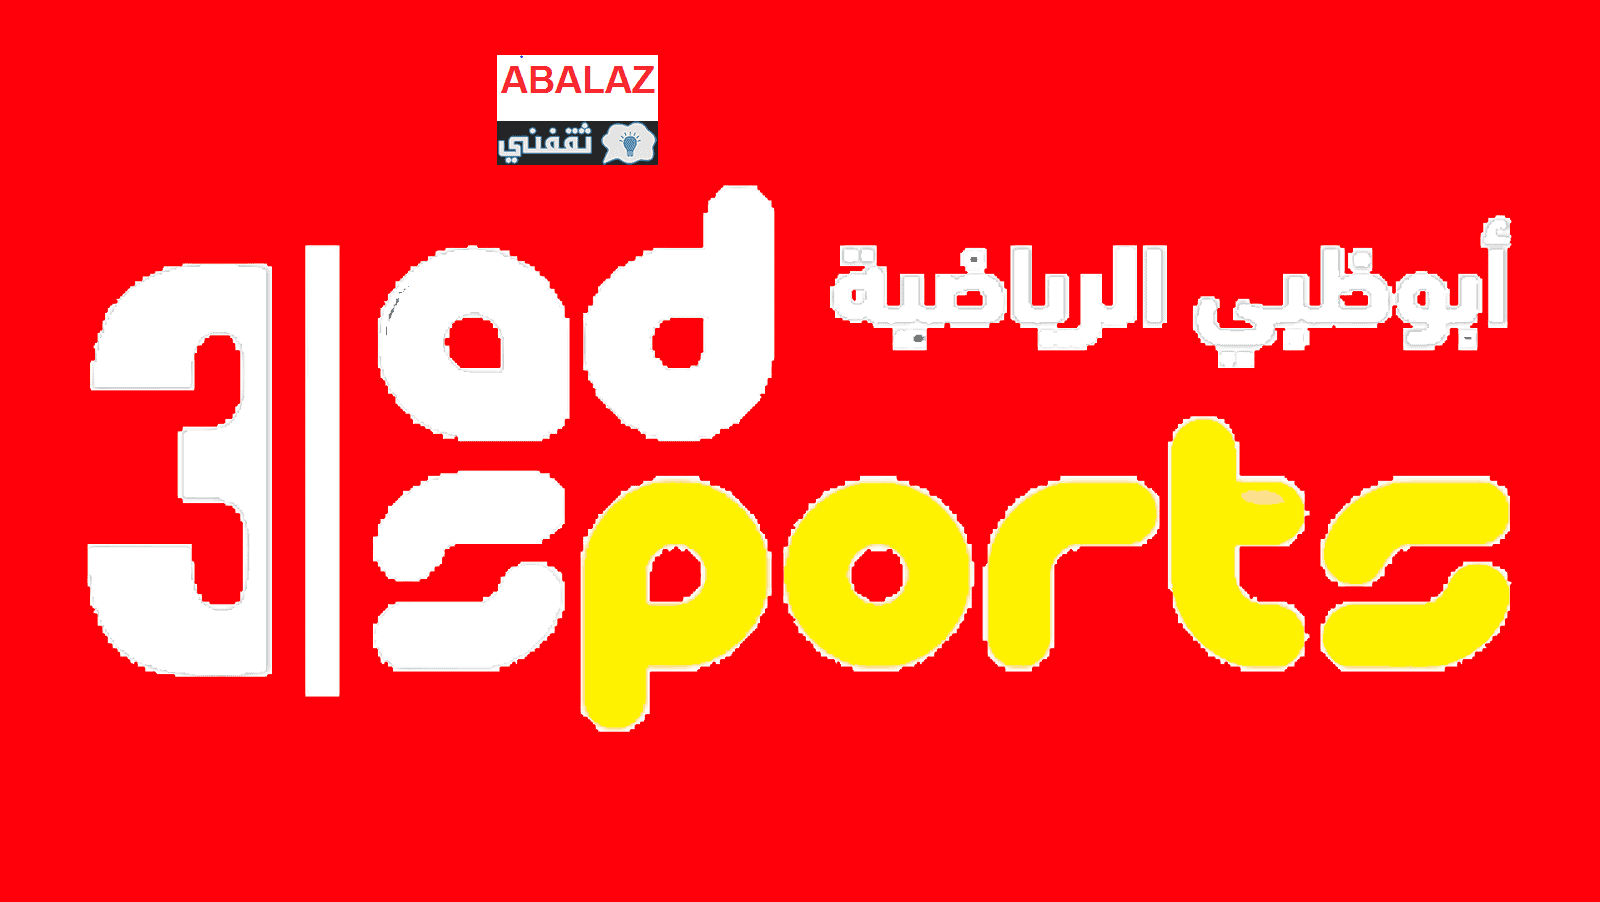 تردد قناة أبو ظبي الرياضية 2021